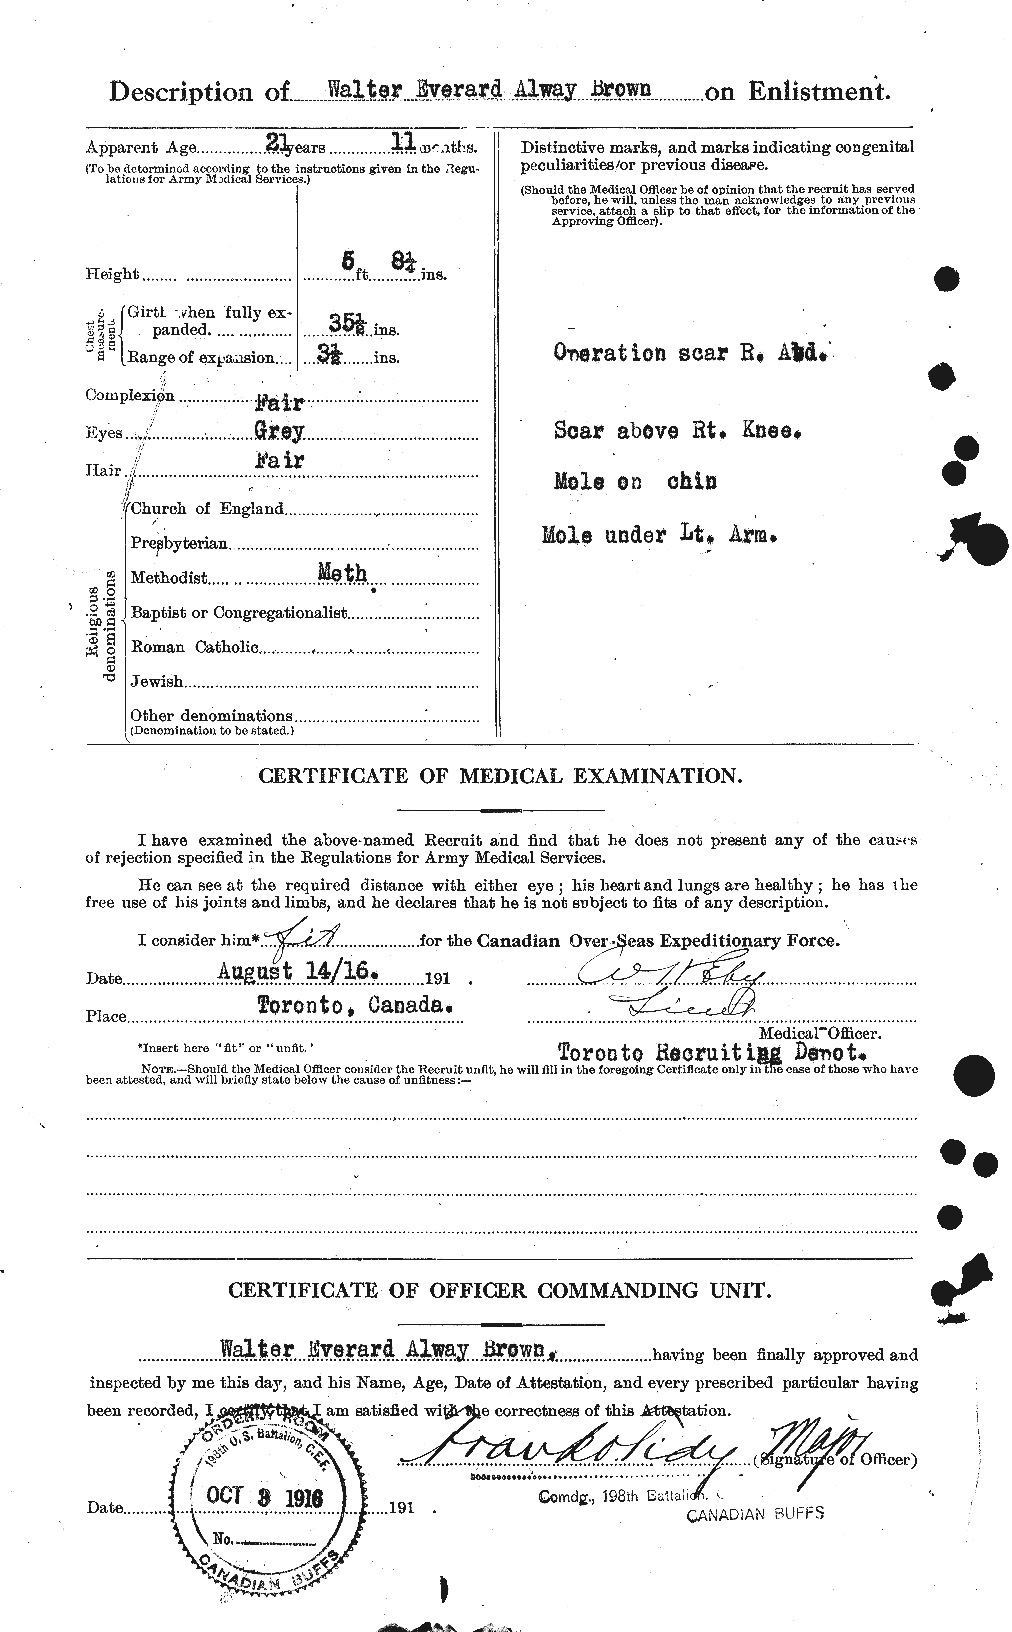 Dossiers du Personnel de la Première Guerre mondiale - CEC 266663b